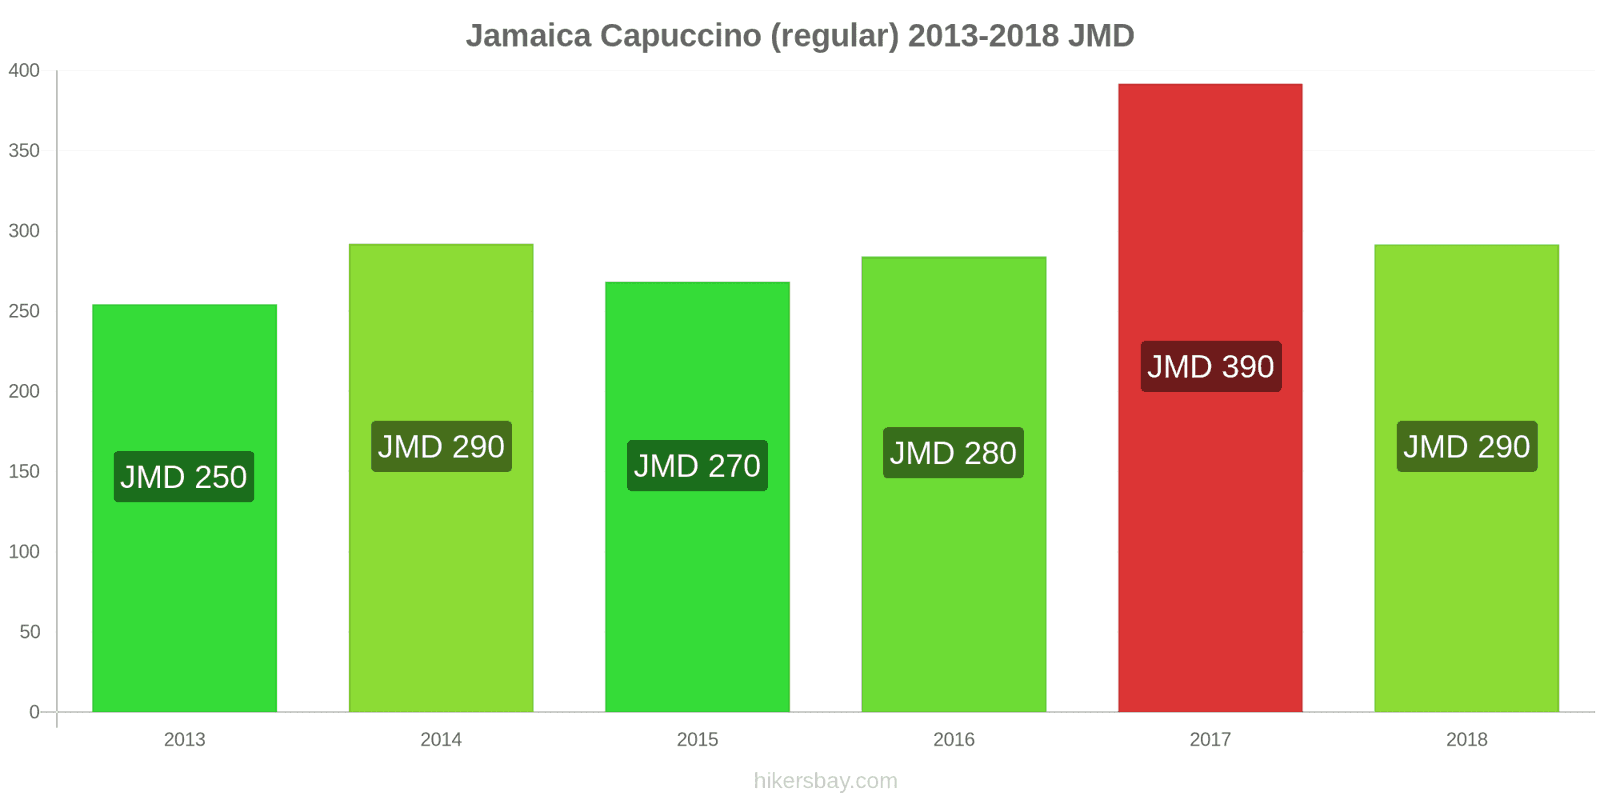 Jamaica mudanças de preços Cappuccino hikersbay.com